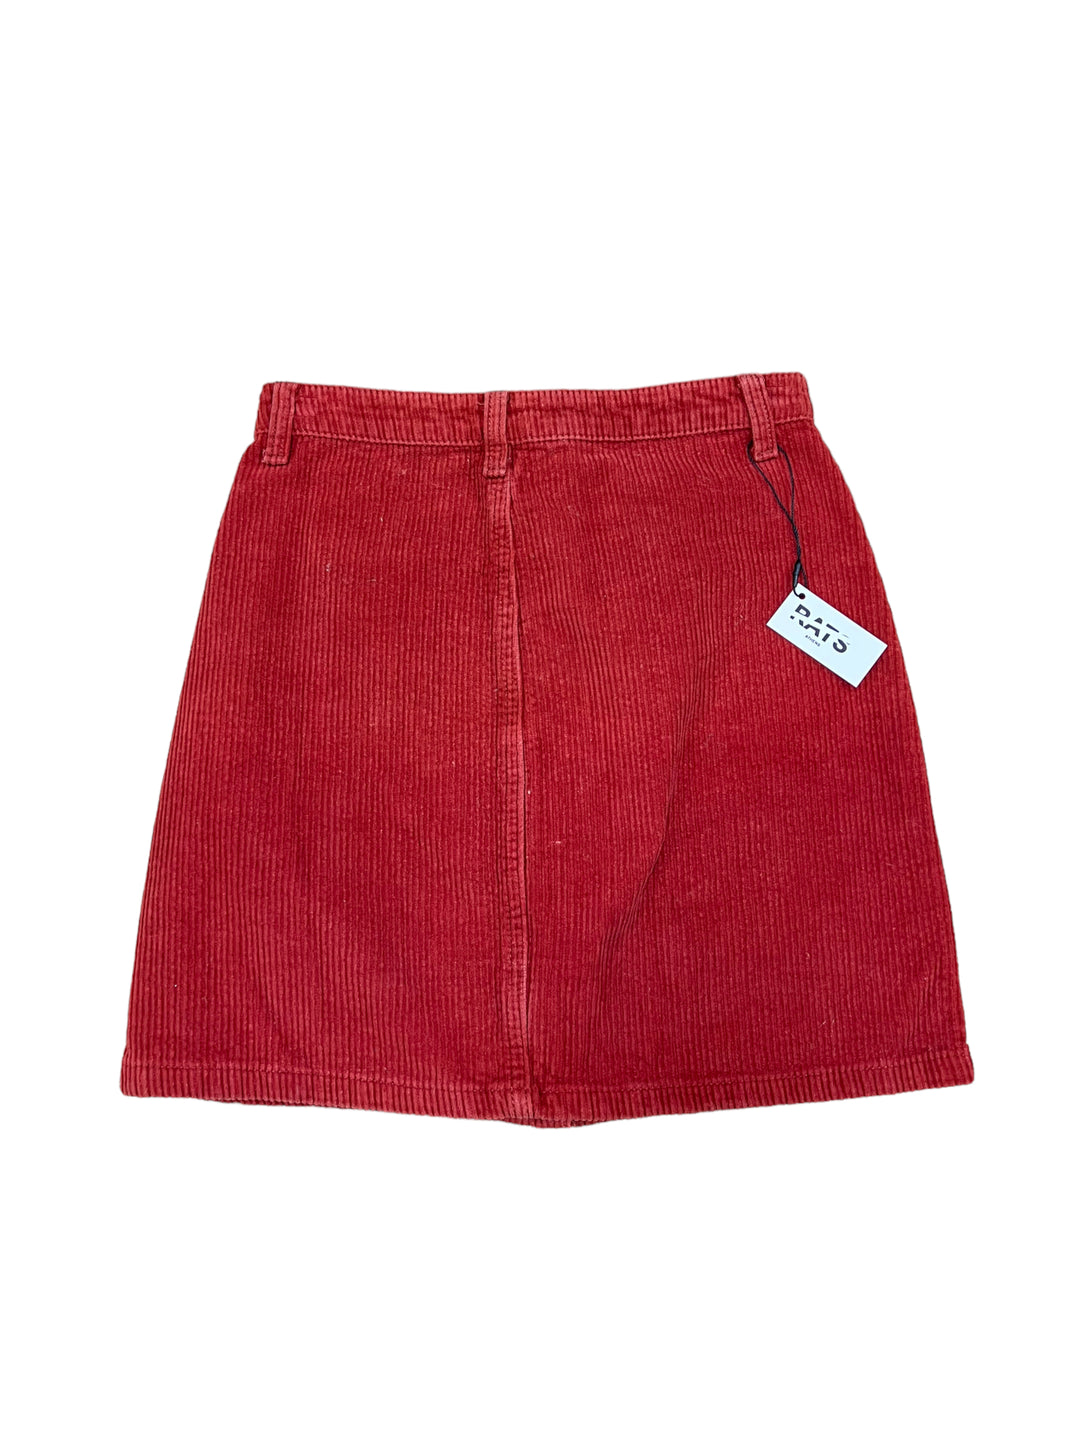 Vintage Corduroy Mini Skirt Women’s Extra Small(32-34)